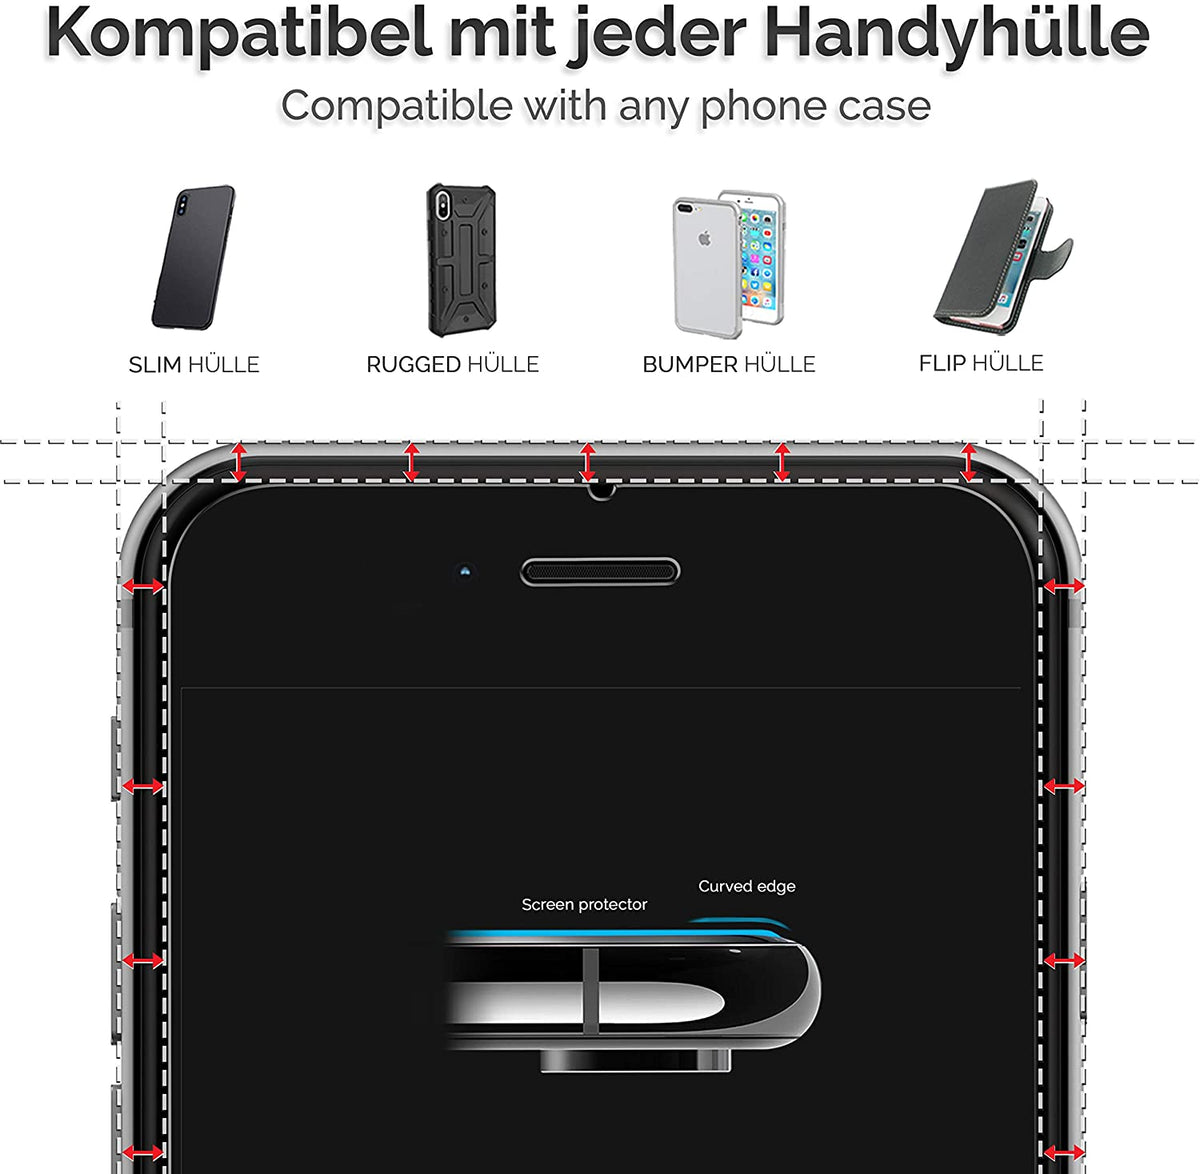 Power Theory Schutzfolie kompatibel mit iPhone 6s/iPhone 6 [2 Stück] -  mit Schablone, Glas Folie, Displayschutzfolie, Schutzglas Cover